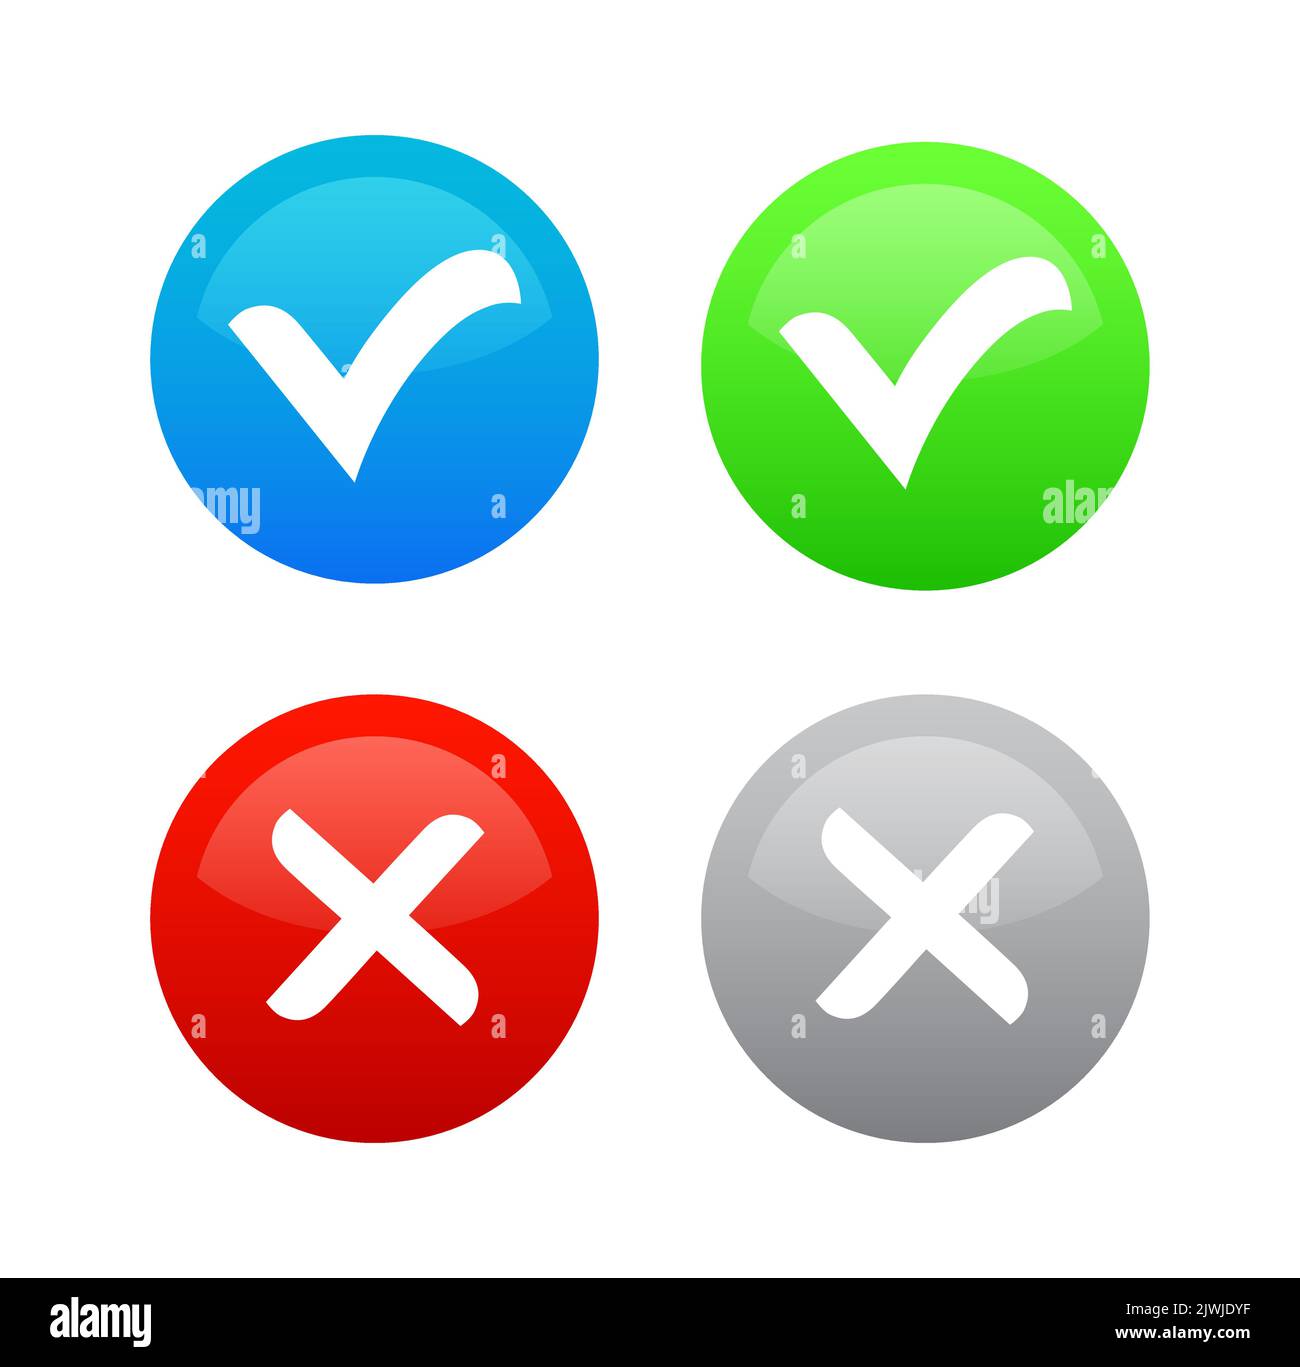 Sì - Nessuna icona colorata rotonda vettoriale, illustrazione OK e X per Web, app mobili e stampe. Illustrazione Vettoriale